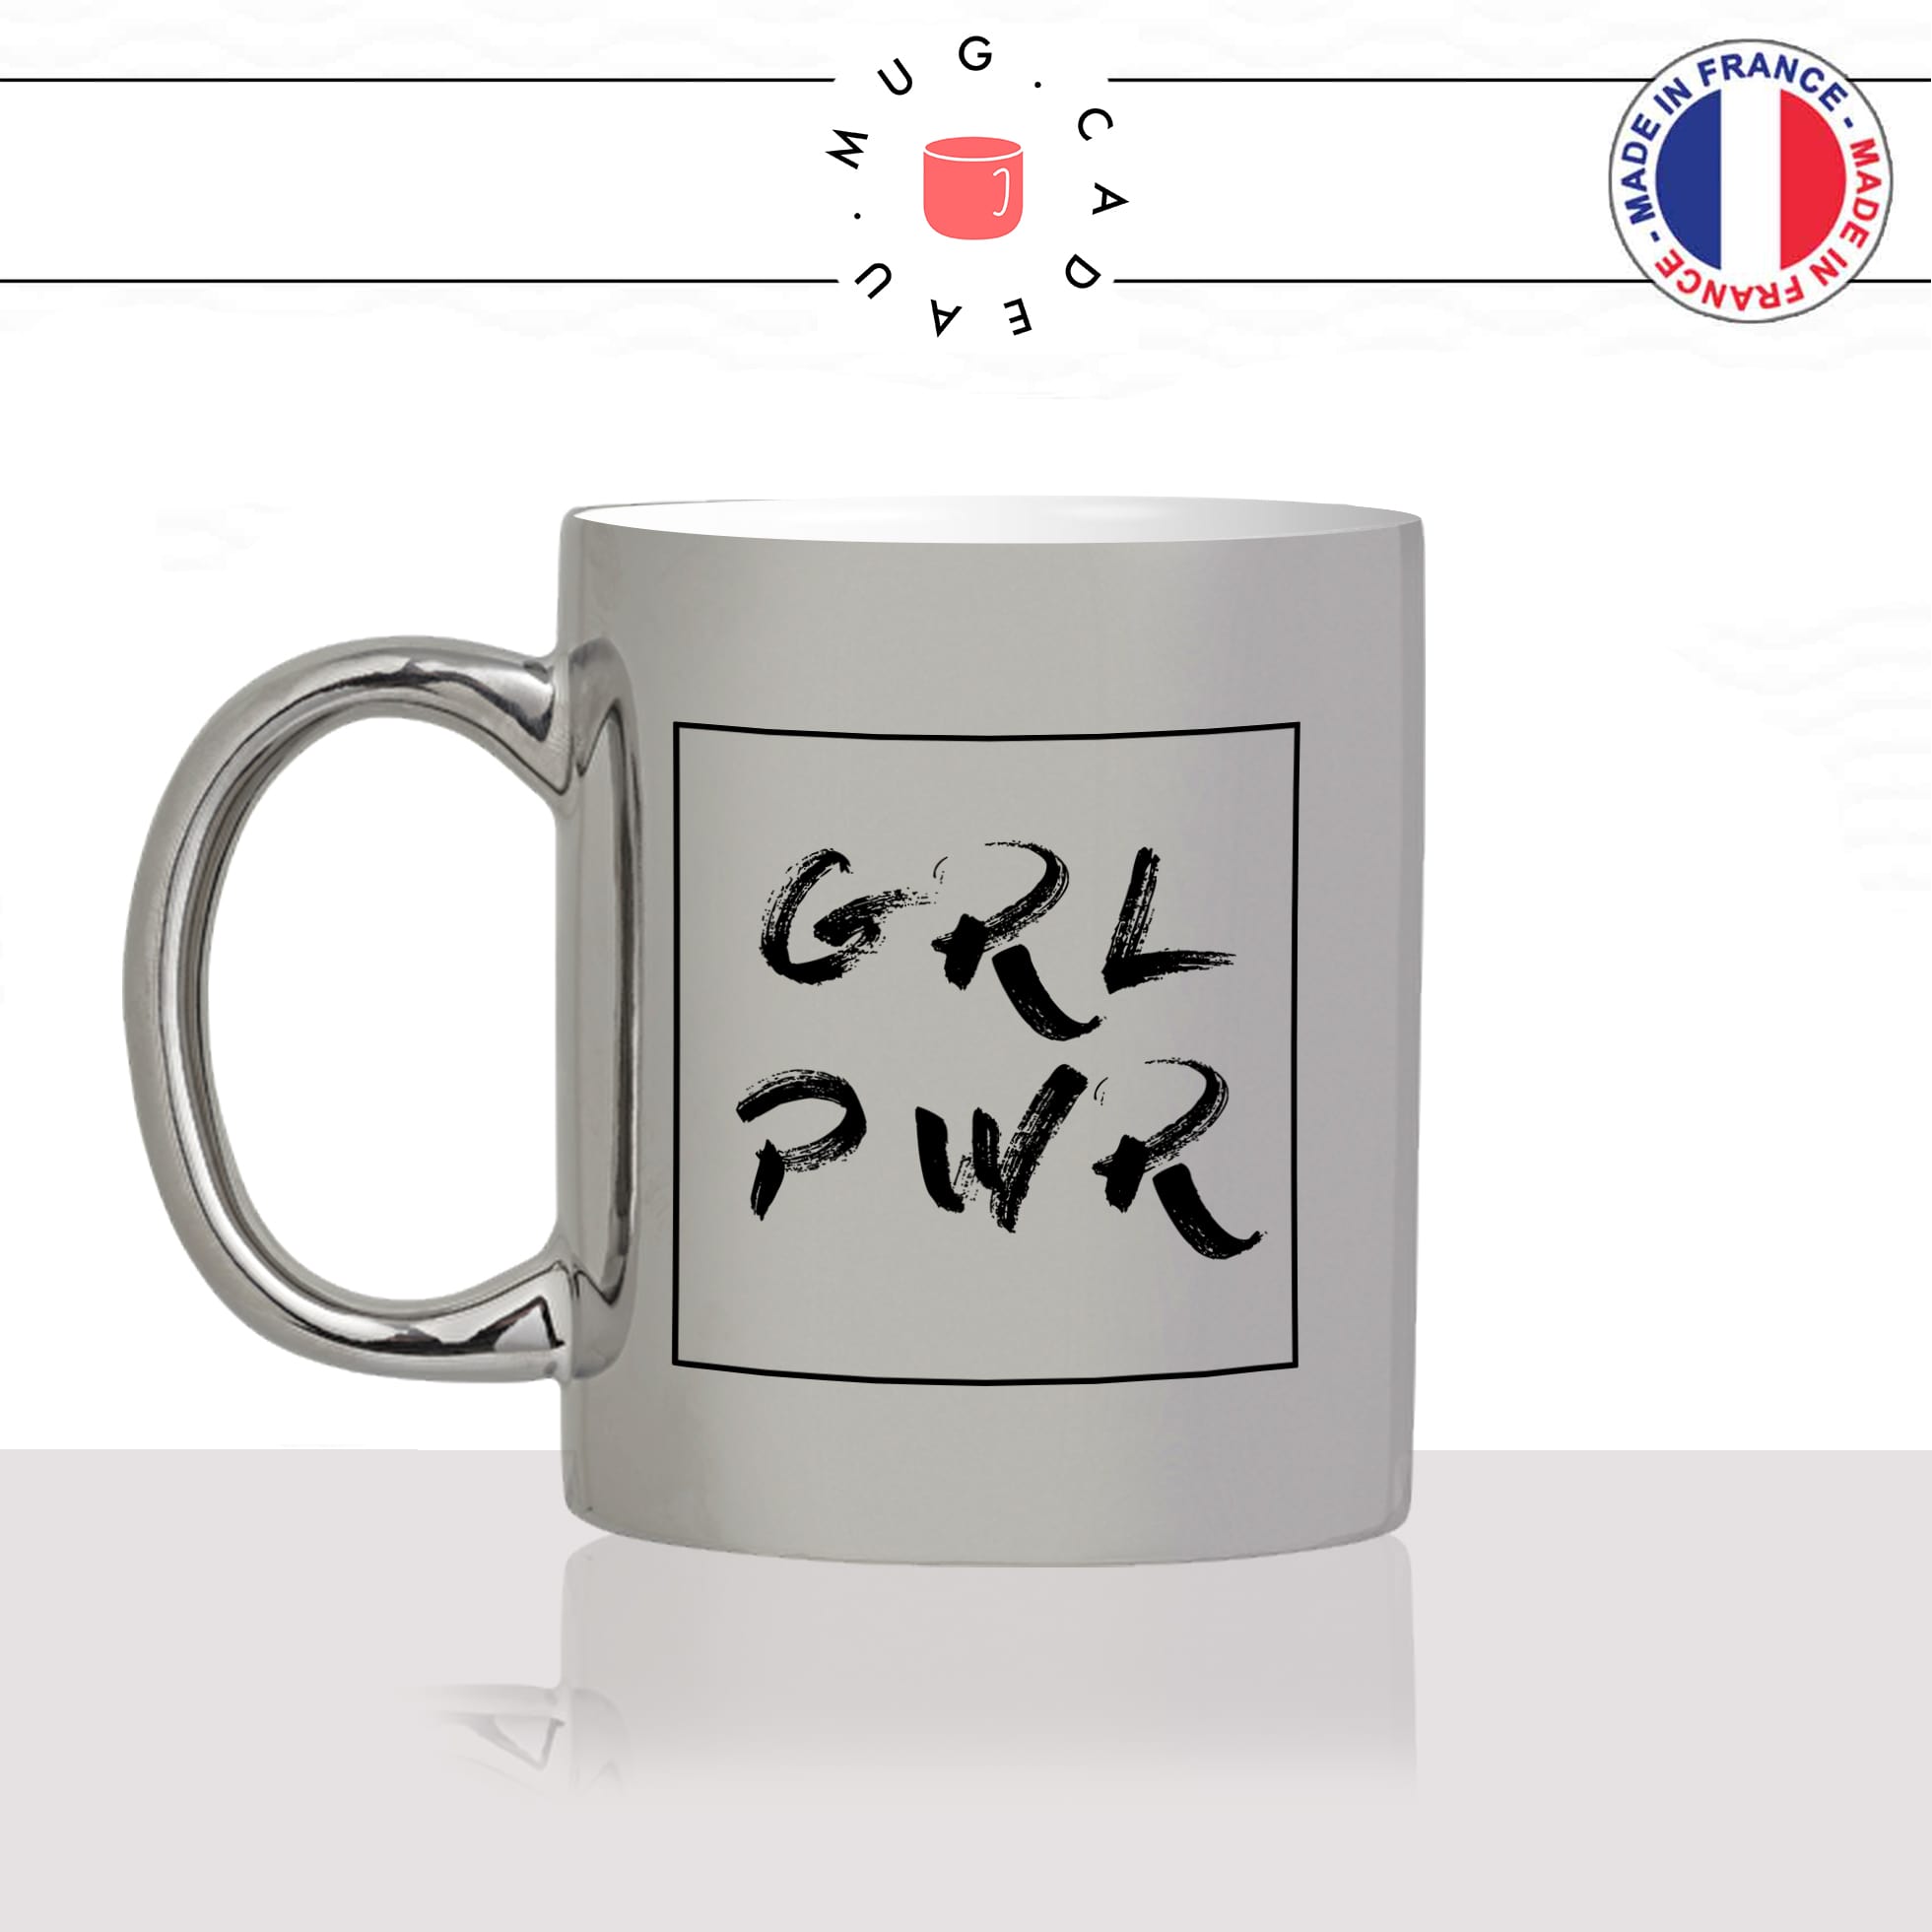 mug-tasse-argent-argenté-silver-girl-power-grl-pwr-feministe-femmecopine-collegue-patronne-humour-idée-cadeau-fun-cool-café-thé-original-min